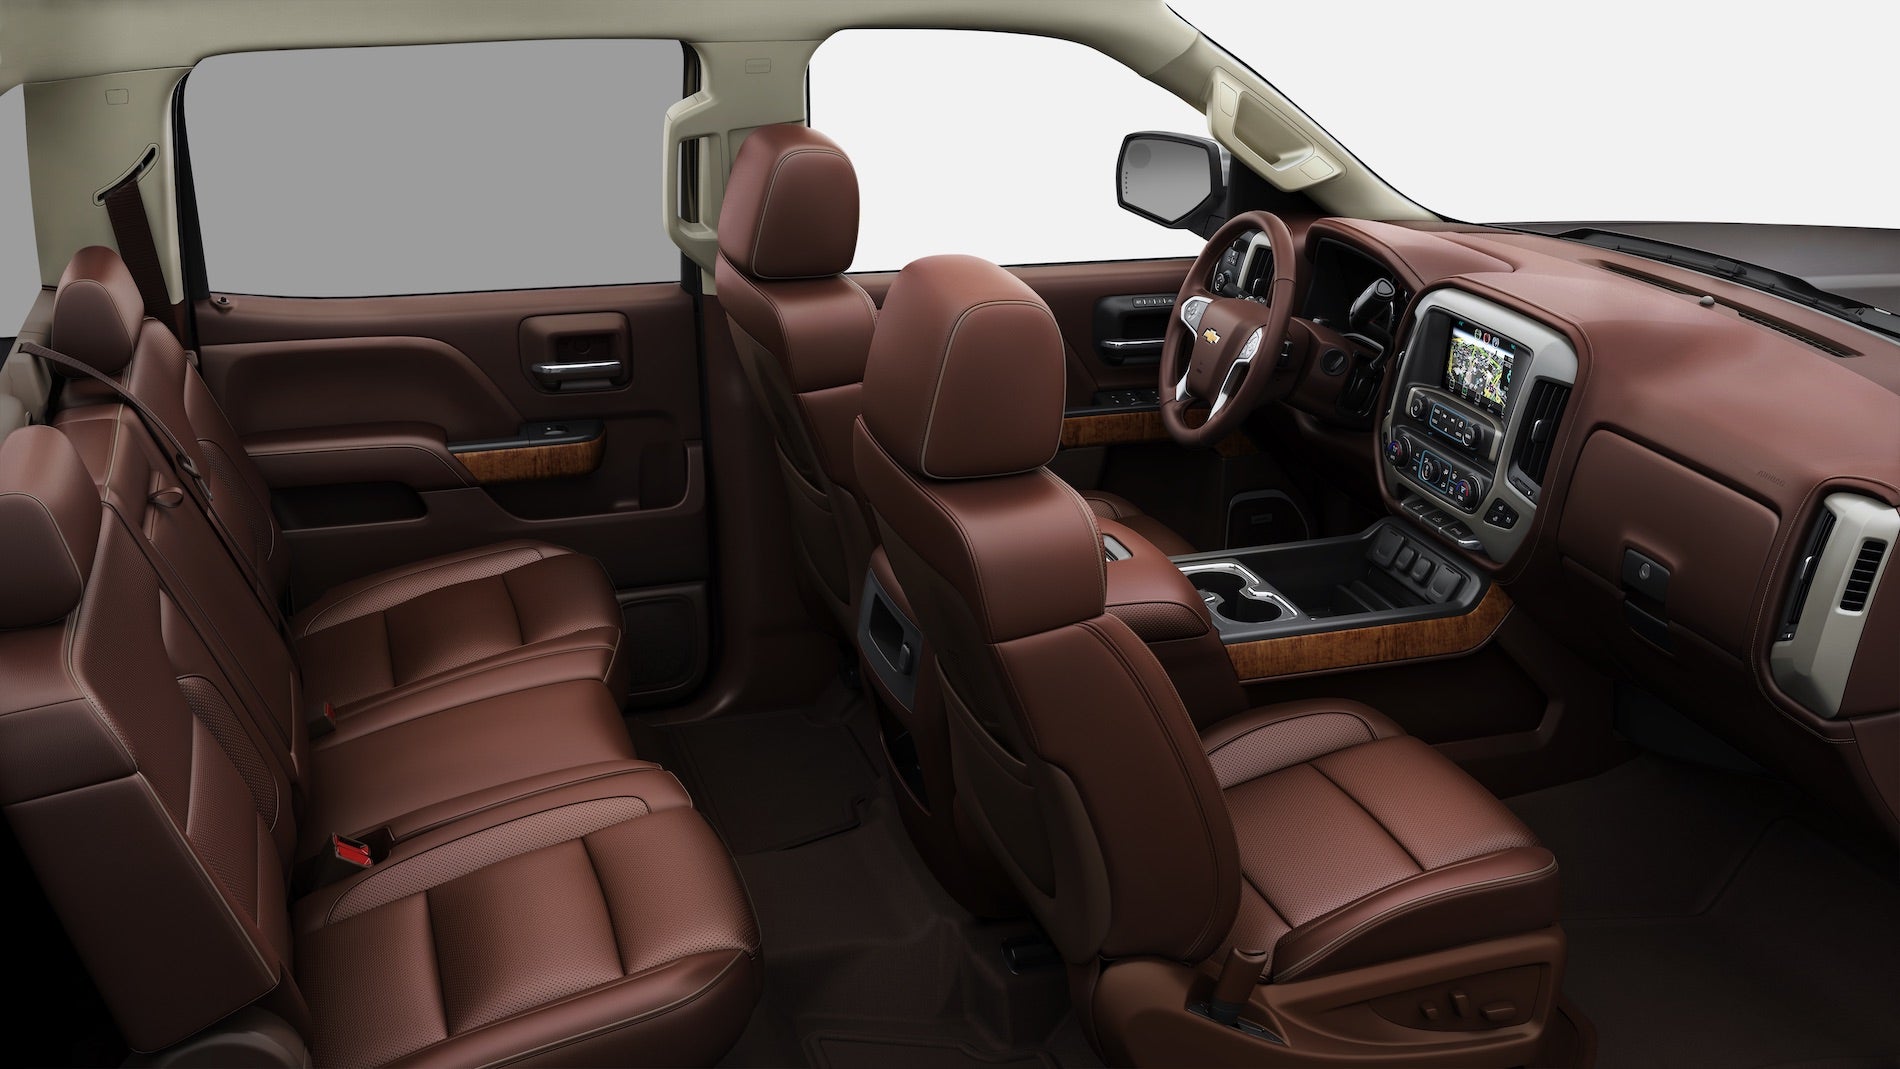 2021 Chevy Silverado 2500 Interior